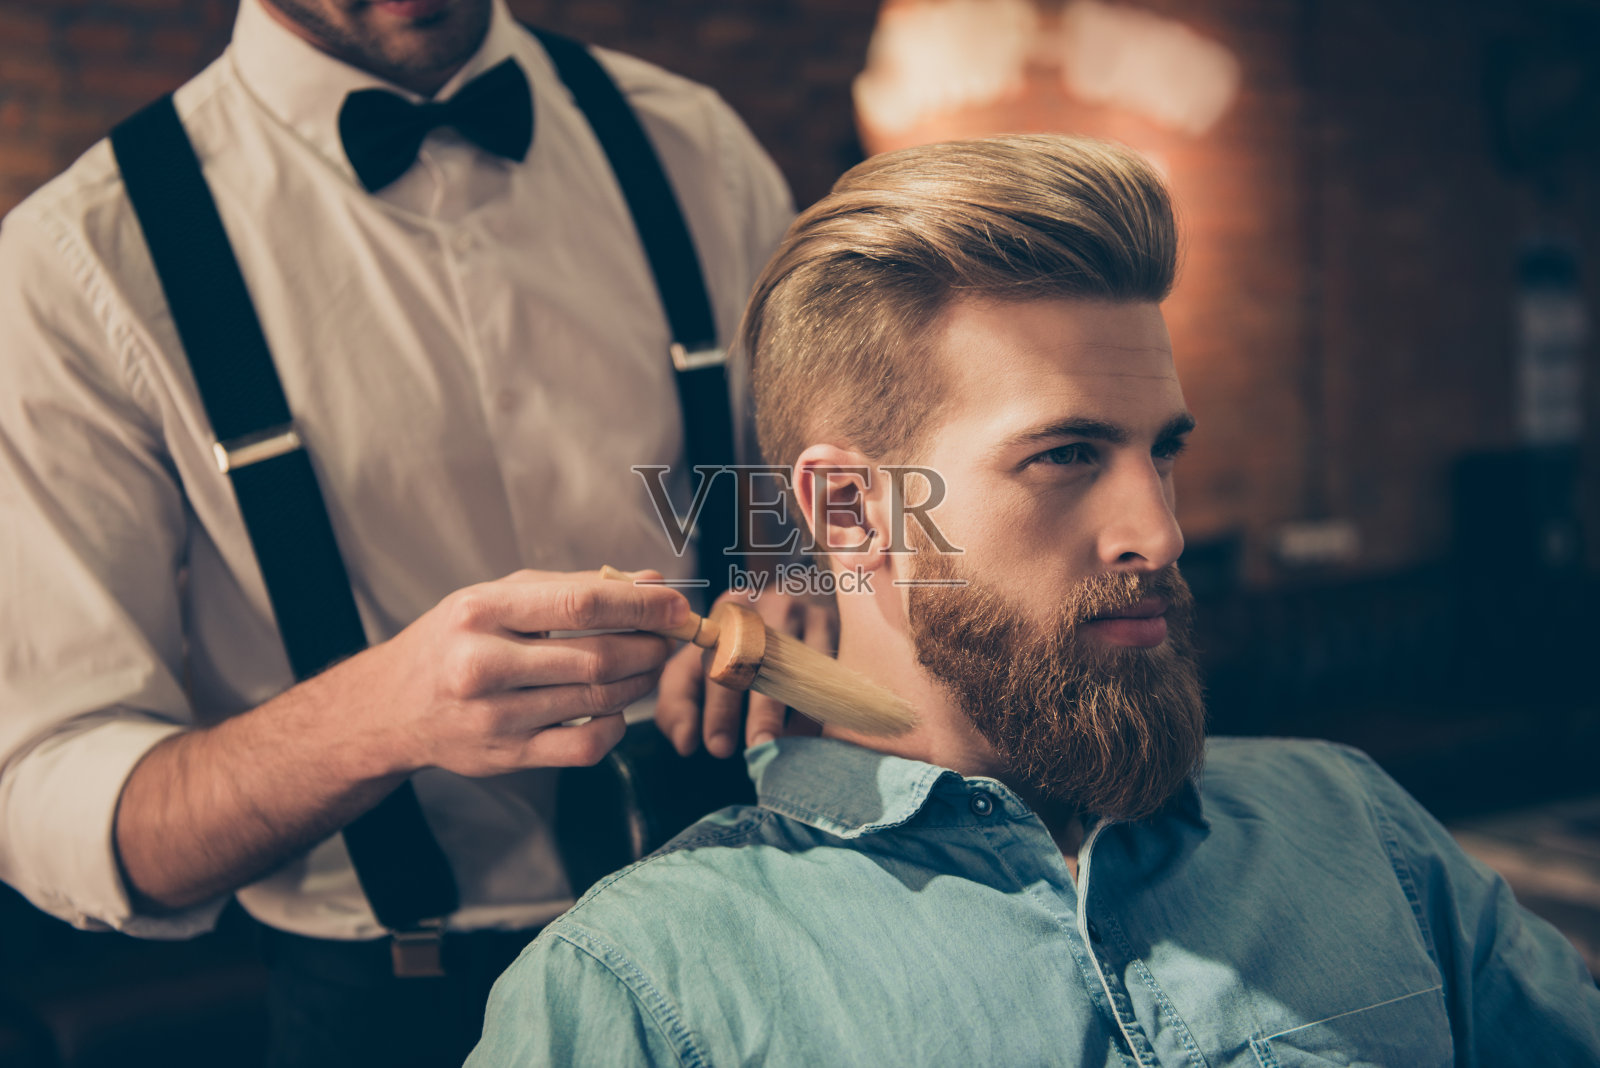 一名穿着考究的理发师正在用刷子清洁顾客的脖子，并为他展示自己的工作。惊人的!发型看起来很时尚，很完美照片摄影图片